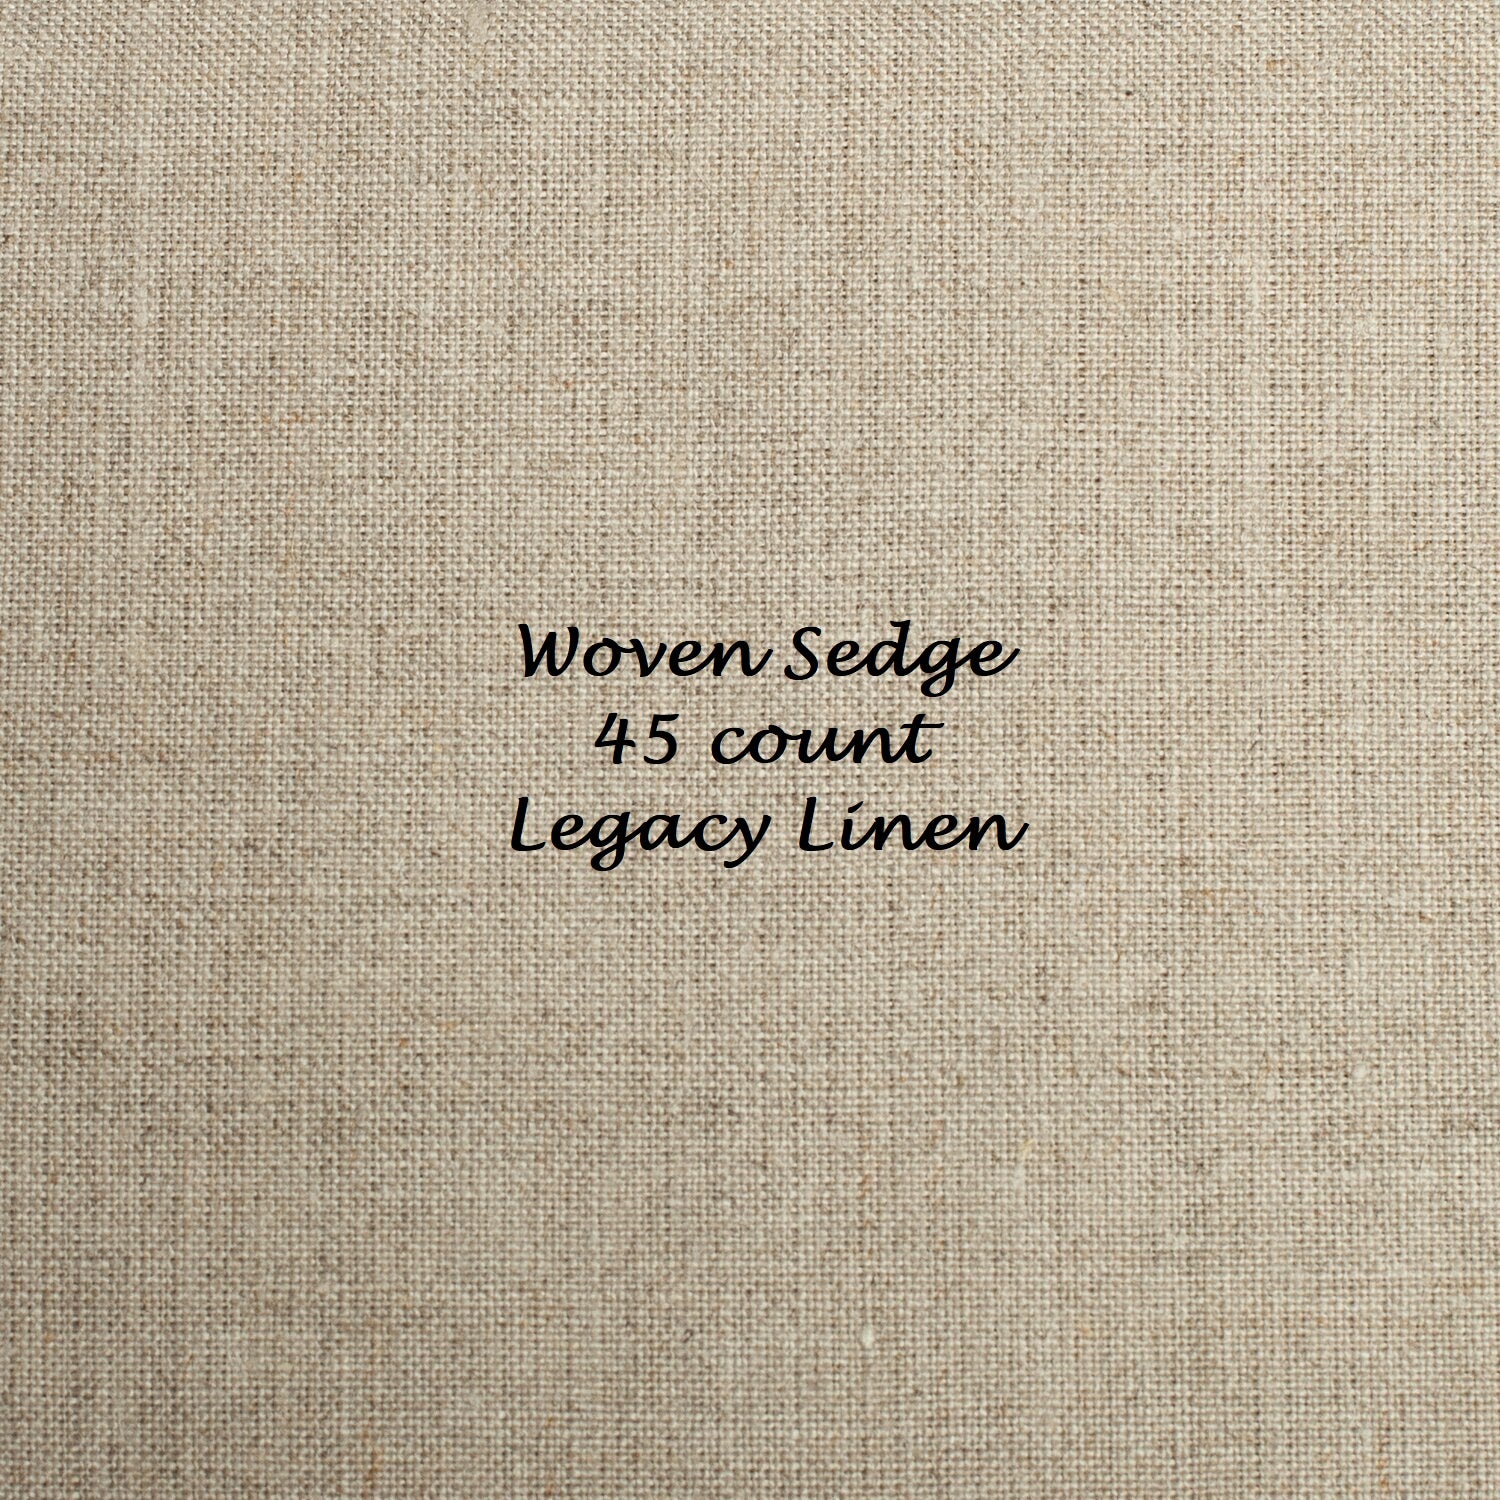 45 count Legacy Linen - Woven Sedge